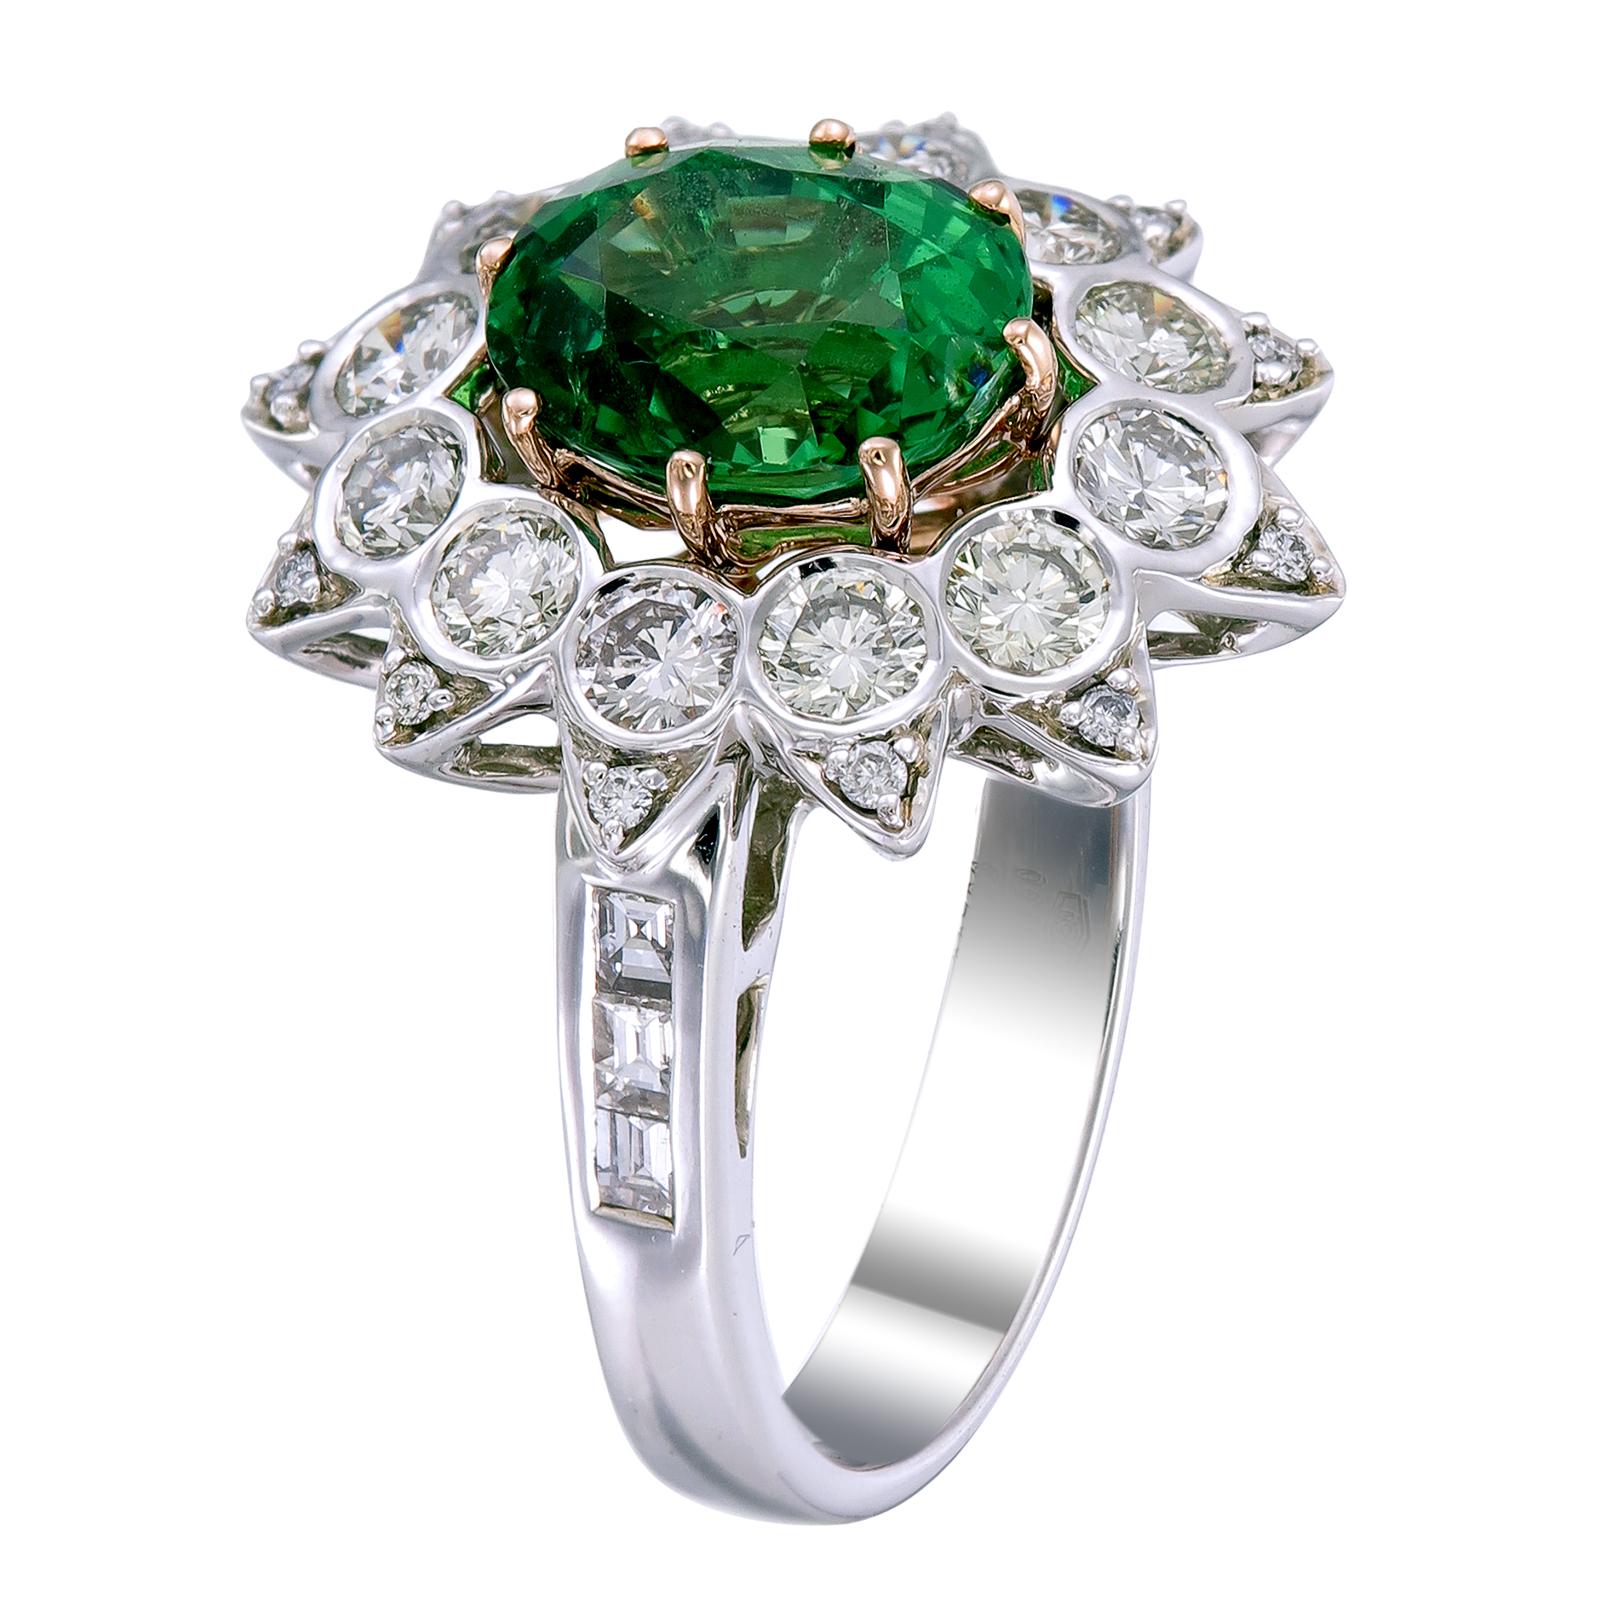 Grün ist die Farbe des Lebens, und dieser Ring mit einem 3,16-karätigen, dunkel gefärbten Tsavorit in der Mitte verleiht diesem Schmuckstück eine natürliche Energie und lebenslange Schönheit. Der Hauptstein ist von runden Diamanten von 1,41 Karat